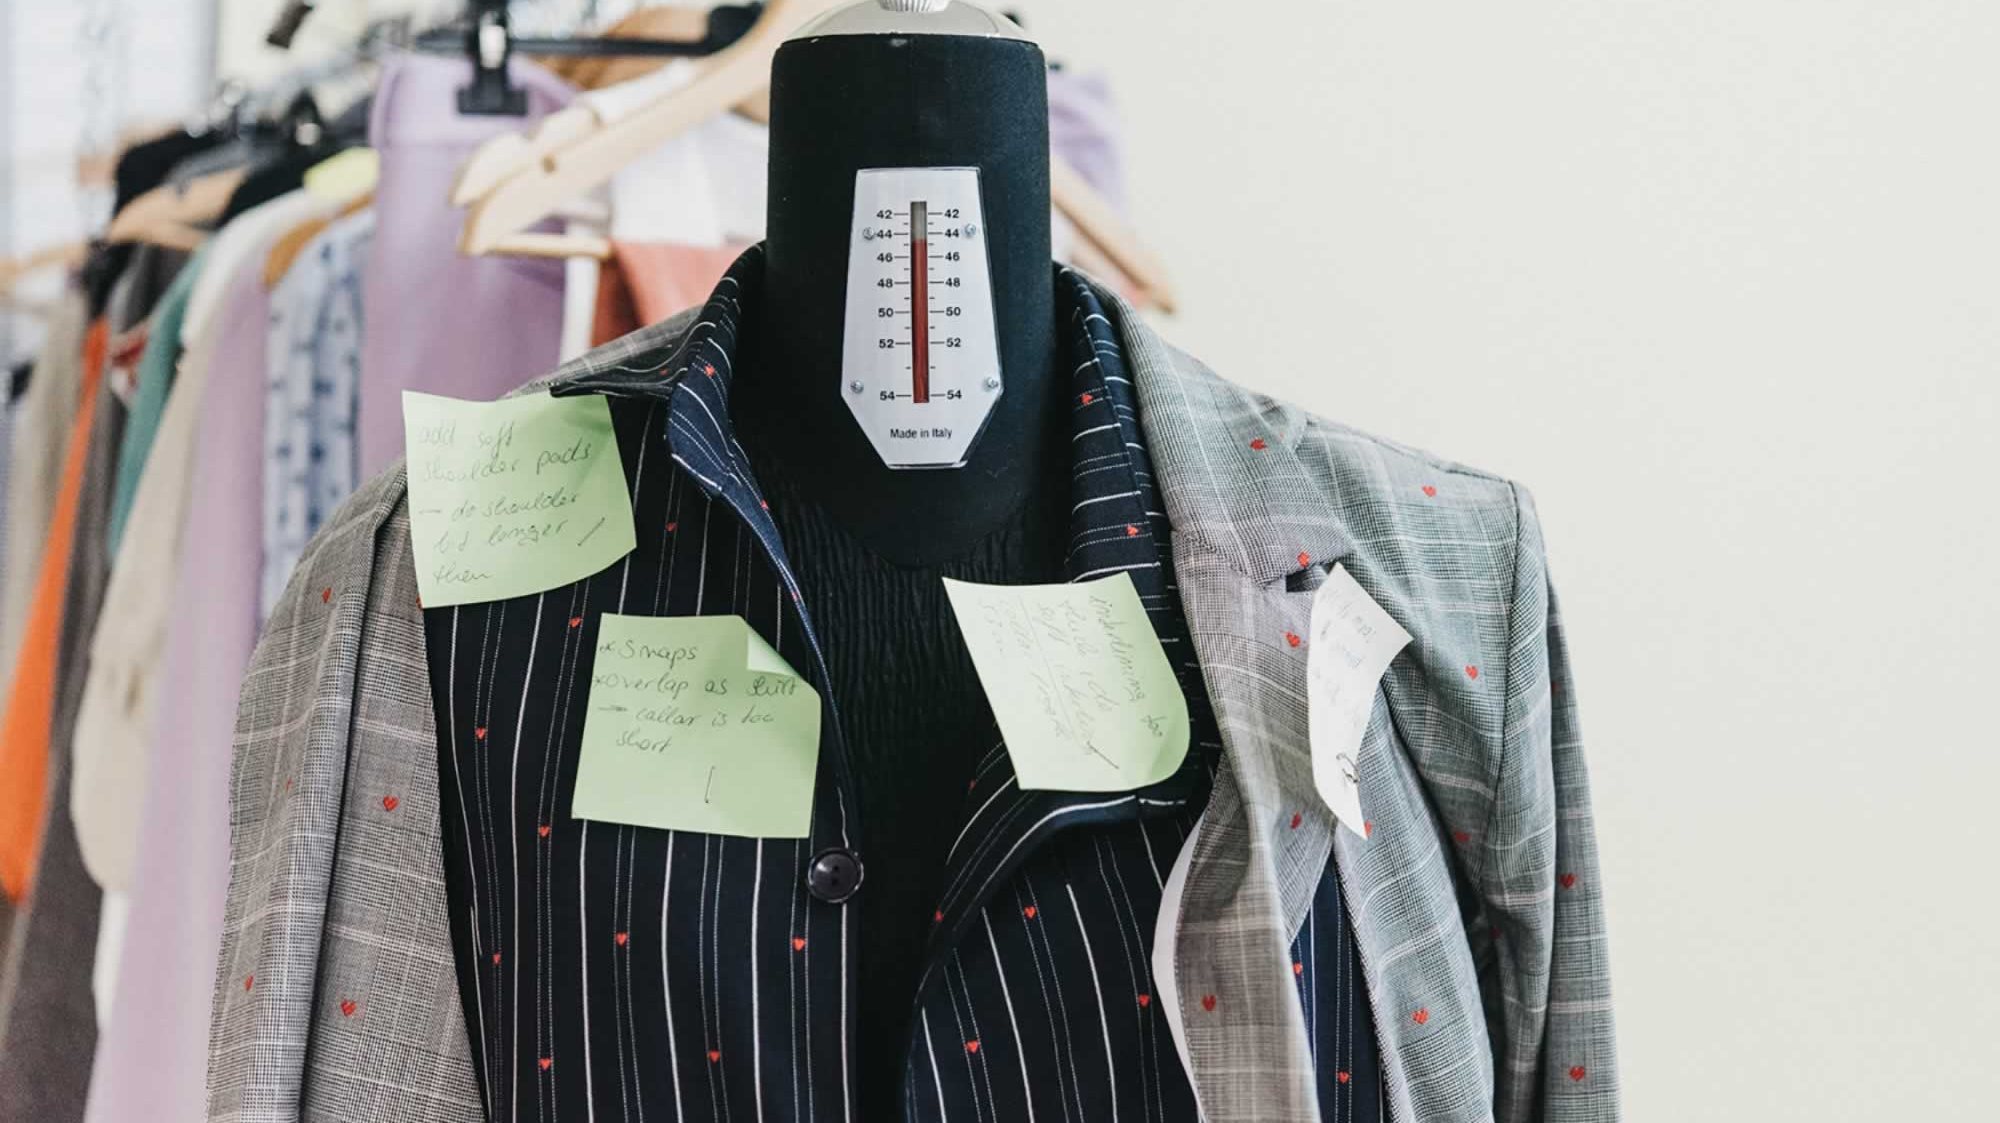 Fundada em 2018, a Springkode implementou uma plataforma online um consumo de moda mais sustentável ao permitir que os fabricantes pudessem vender os seus produtos diretamente aos consumidores